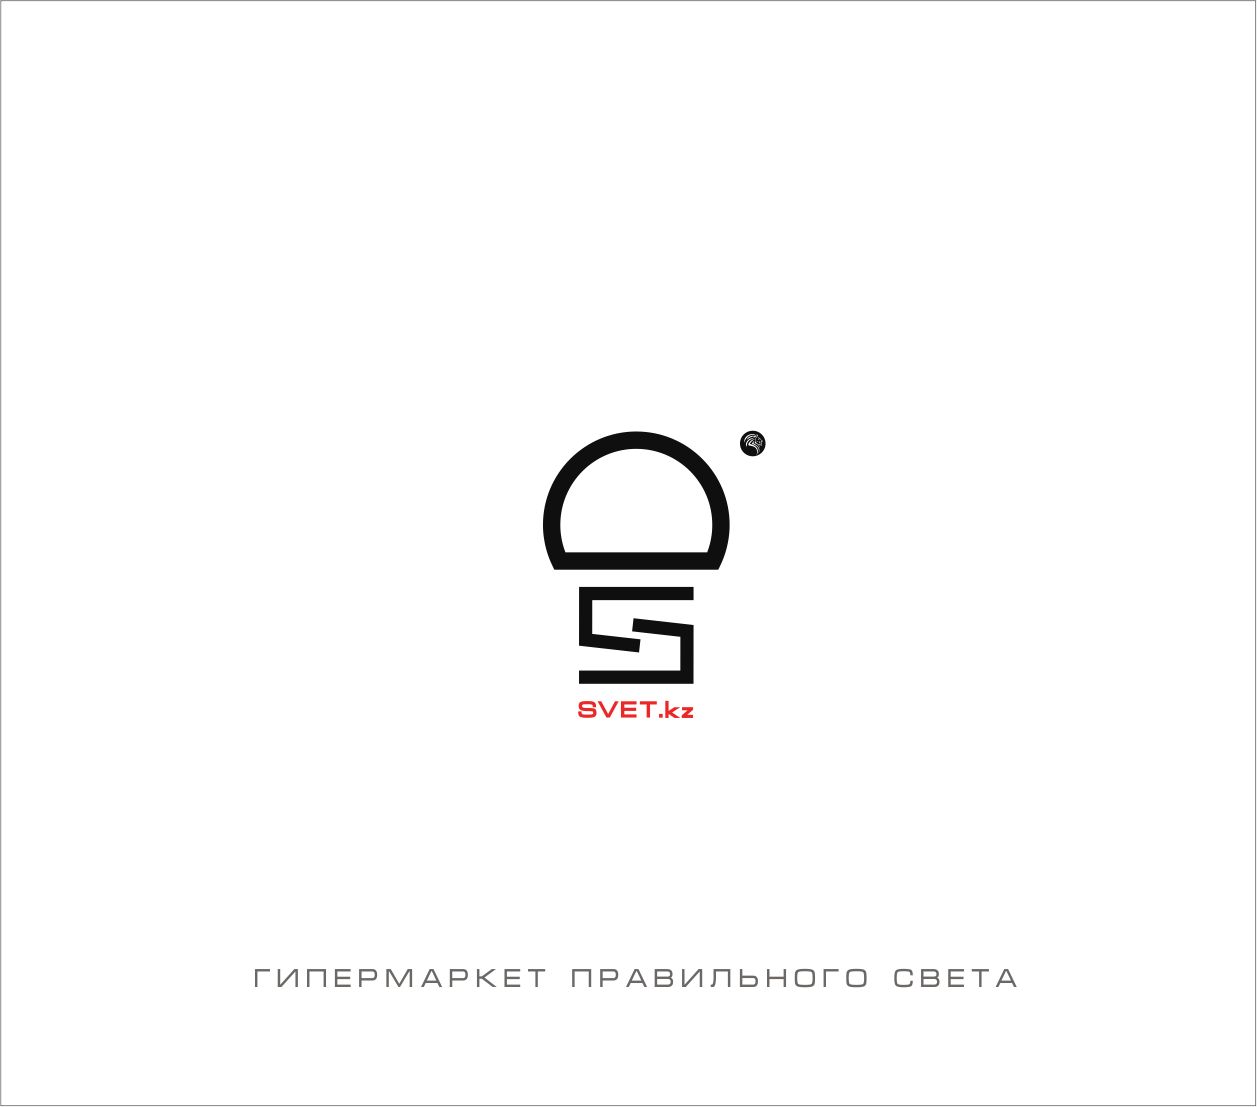 Лого и фирменный стиль для SVET.kz - дизайнер Greeen